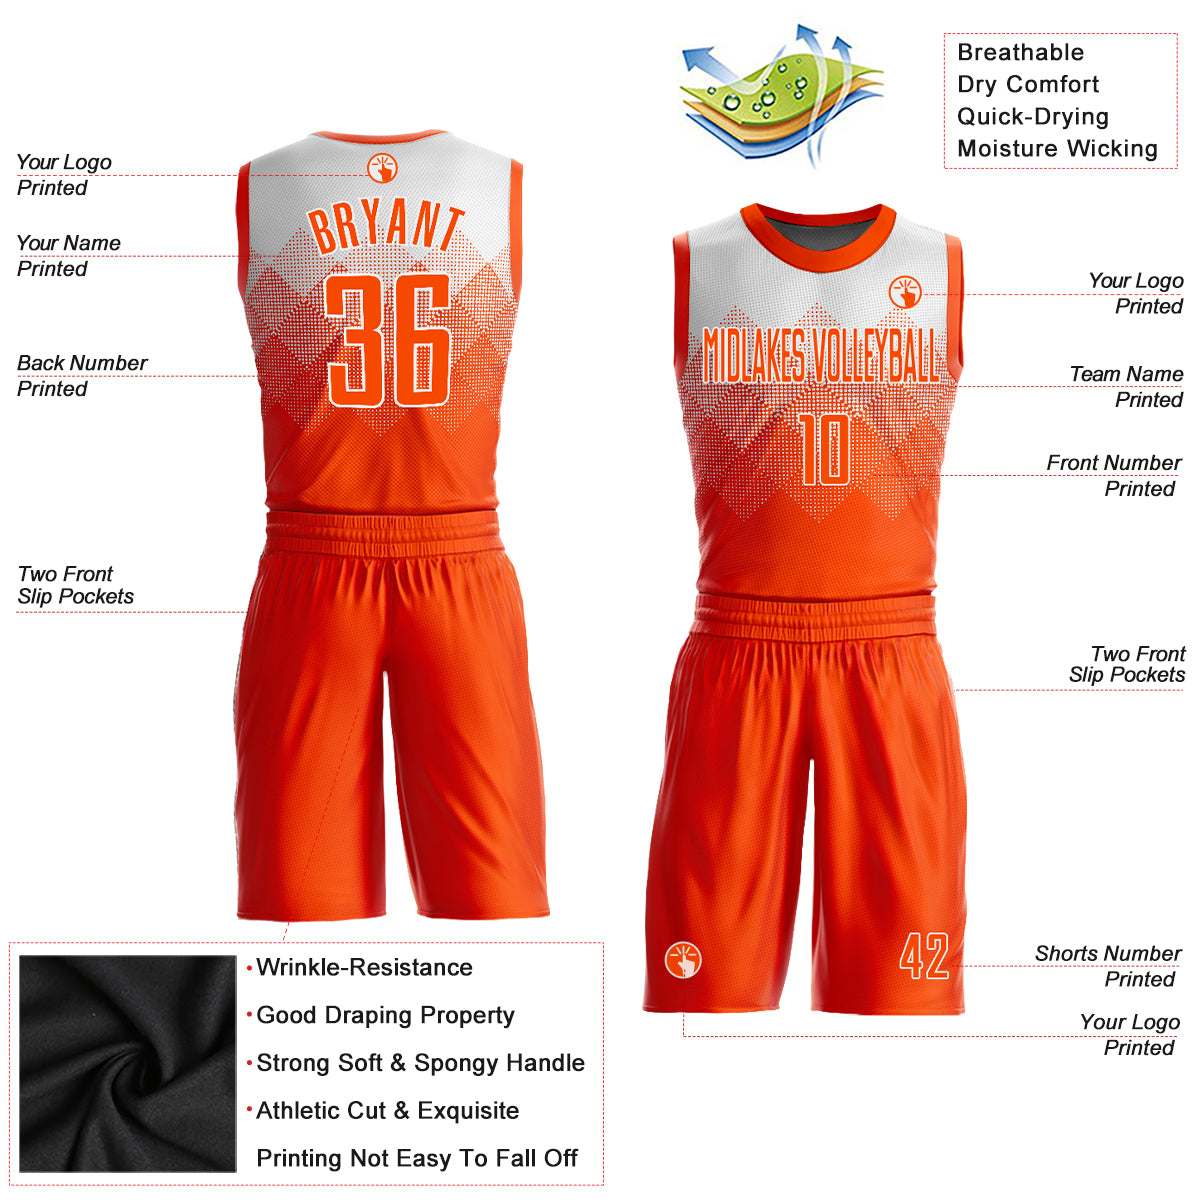 11 Basketball jersey design ideas  jersey design, basketball jersey, jersey